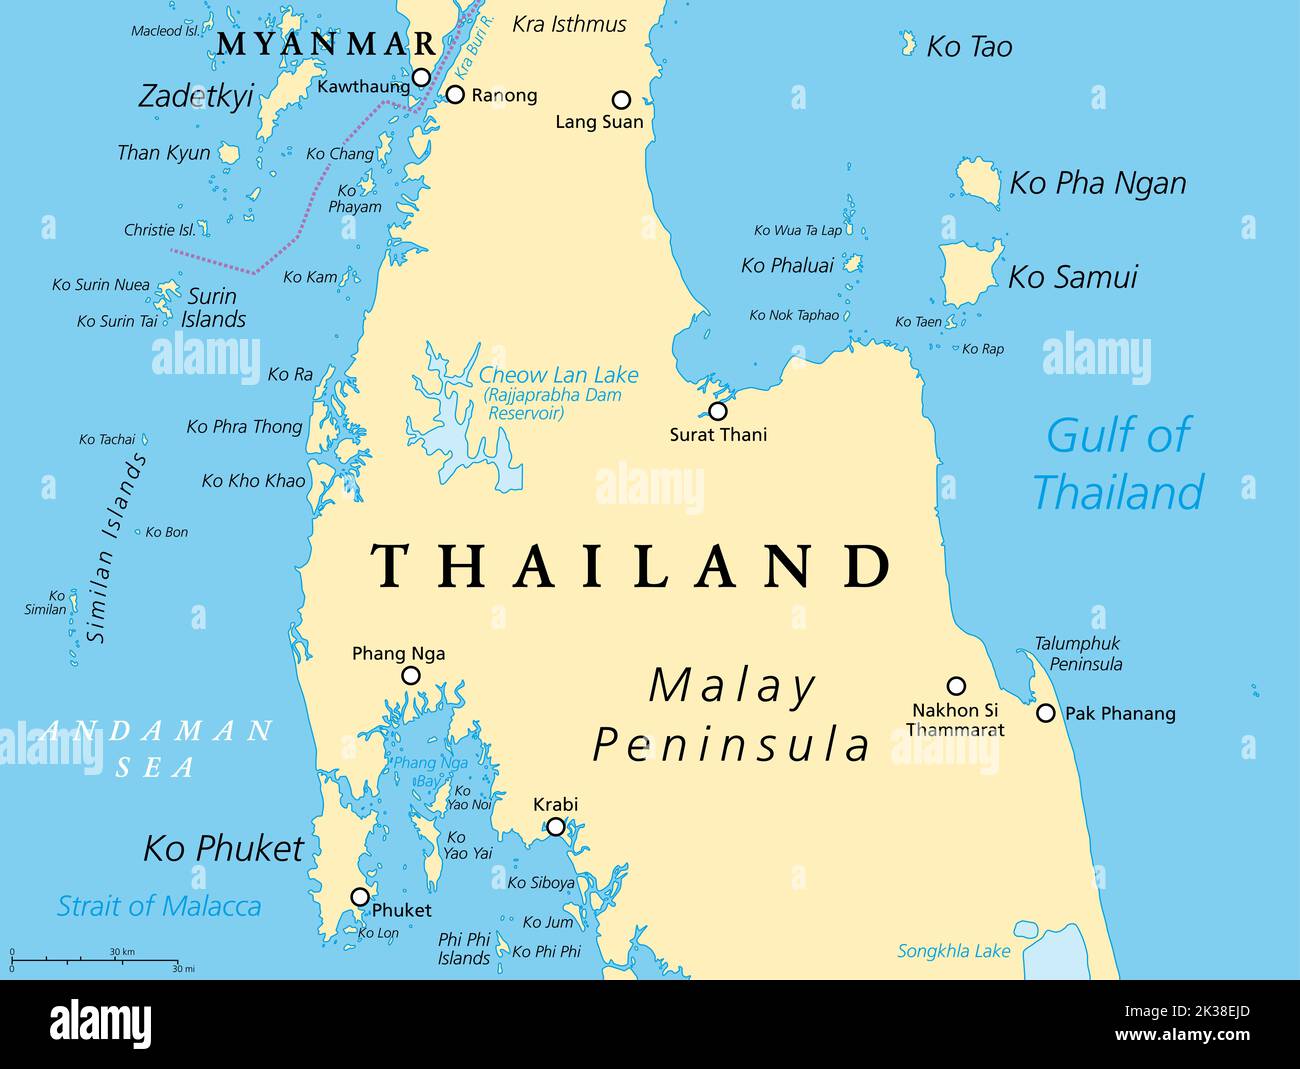 Mapa político de Tailandia, de Ko Tao y Ko Samui a Phuket y Phi Phi Islas. Destinos turísticos al oeste y al este de la Península Malaya. Foto de stock